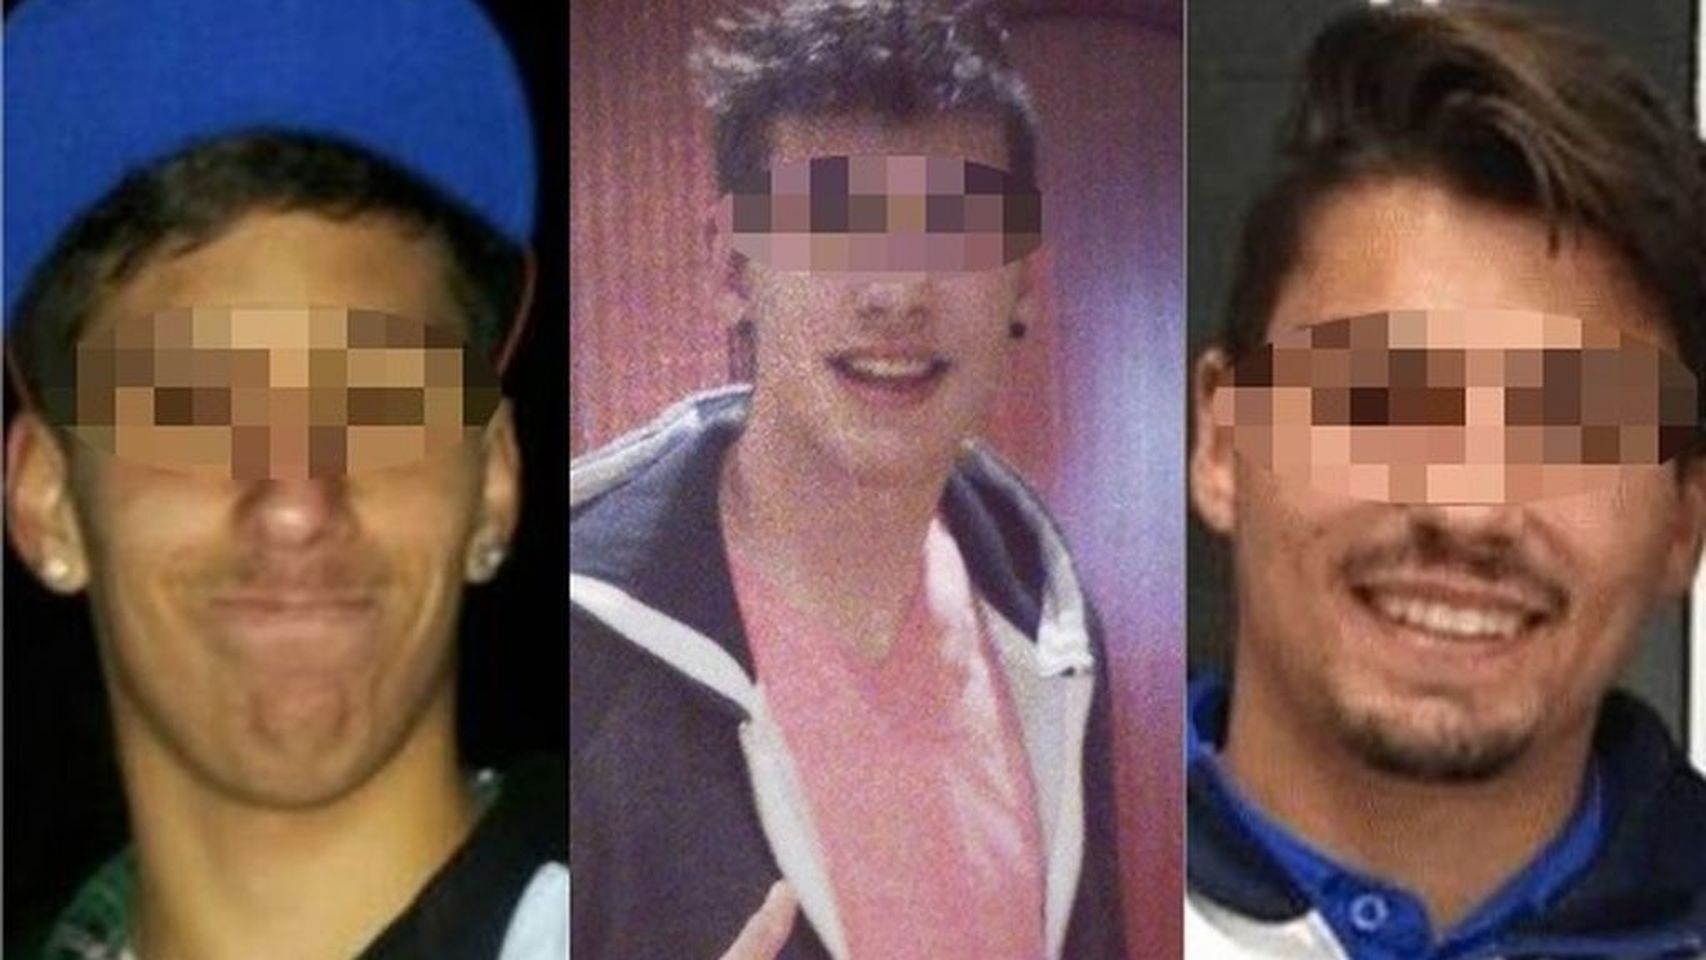 Los tres jugadores de La Arandina acusados de agresión sexual.